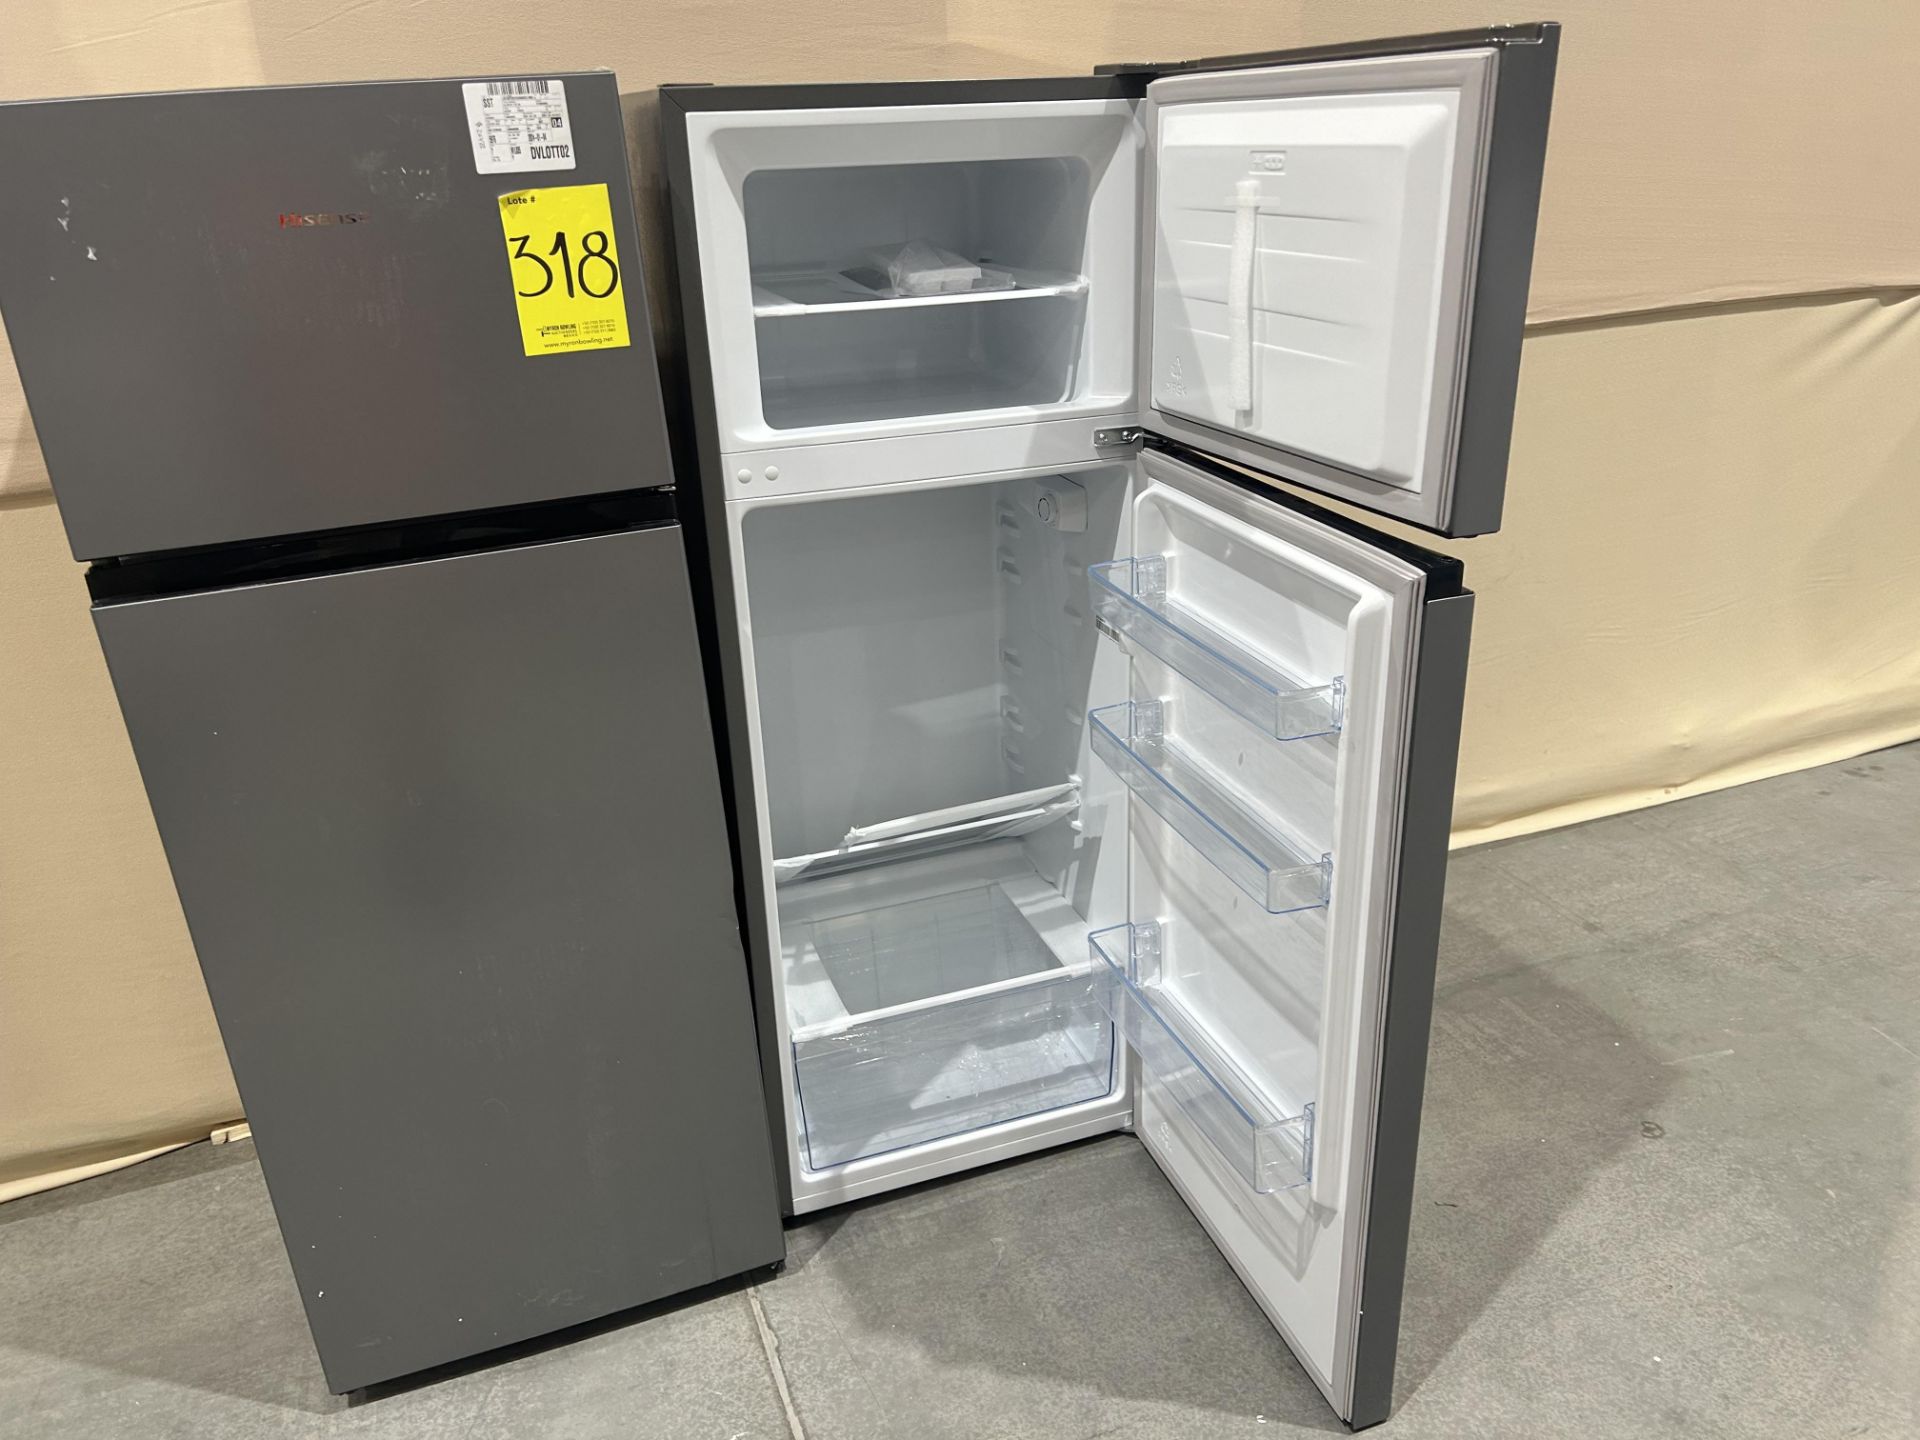 Lote de 2 refrigeradores contiene: 1 refrigerador Marca HISENSE, Modelo RT80D6AGX, Serie P10076, Co - Image 5 of 7